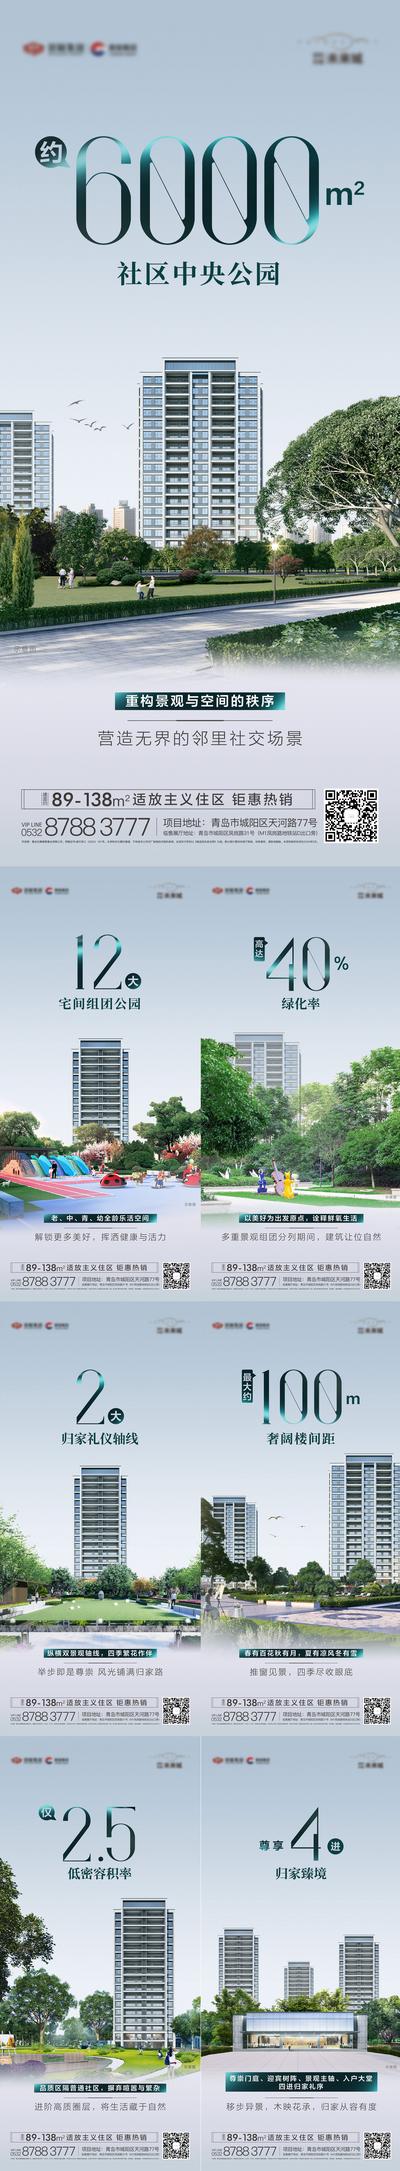 【南门网】海报 地产 价值点 简洁 园林 景观 公园 绿化 容积率 轴线 大门 休闲 楼间距 空间 自然